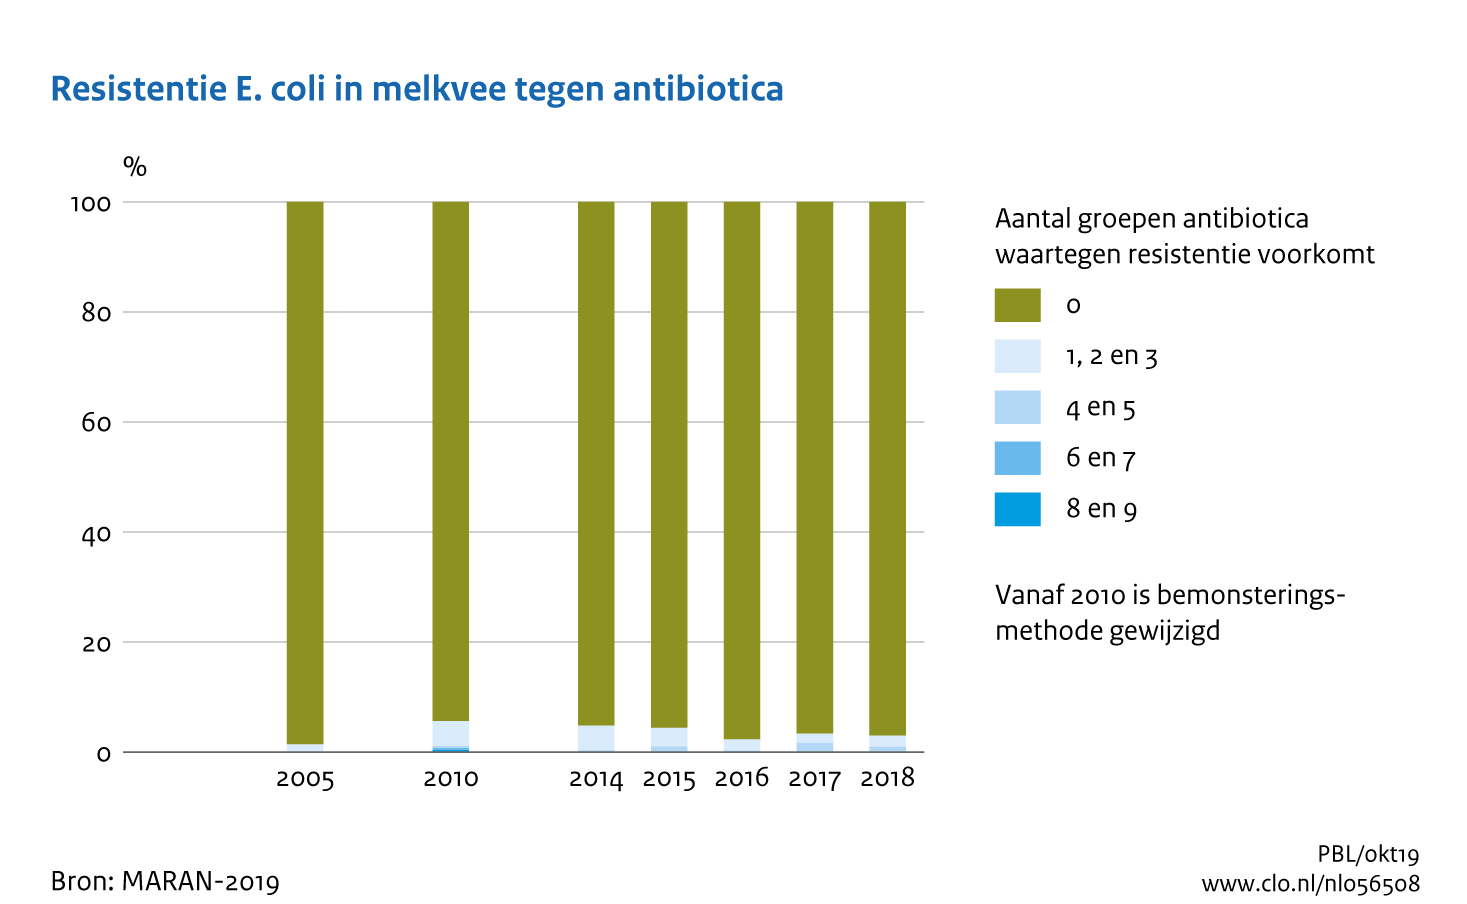 Figuur Resistentie E.coli in melkvee tegen antibiotica. Meervoudige resistentie tegen antibiotica neemt af.. In de rest van de tekst wordt deze figuur uitgebreider uitgelegd.